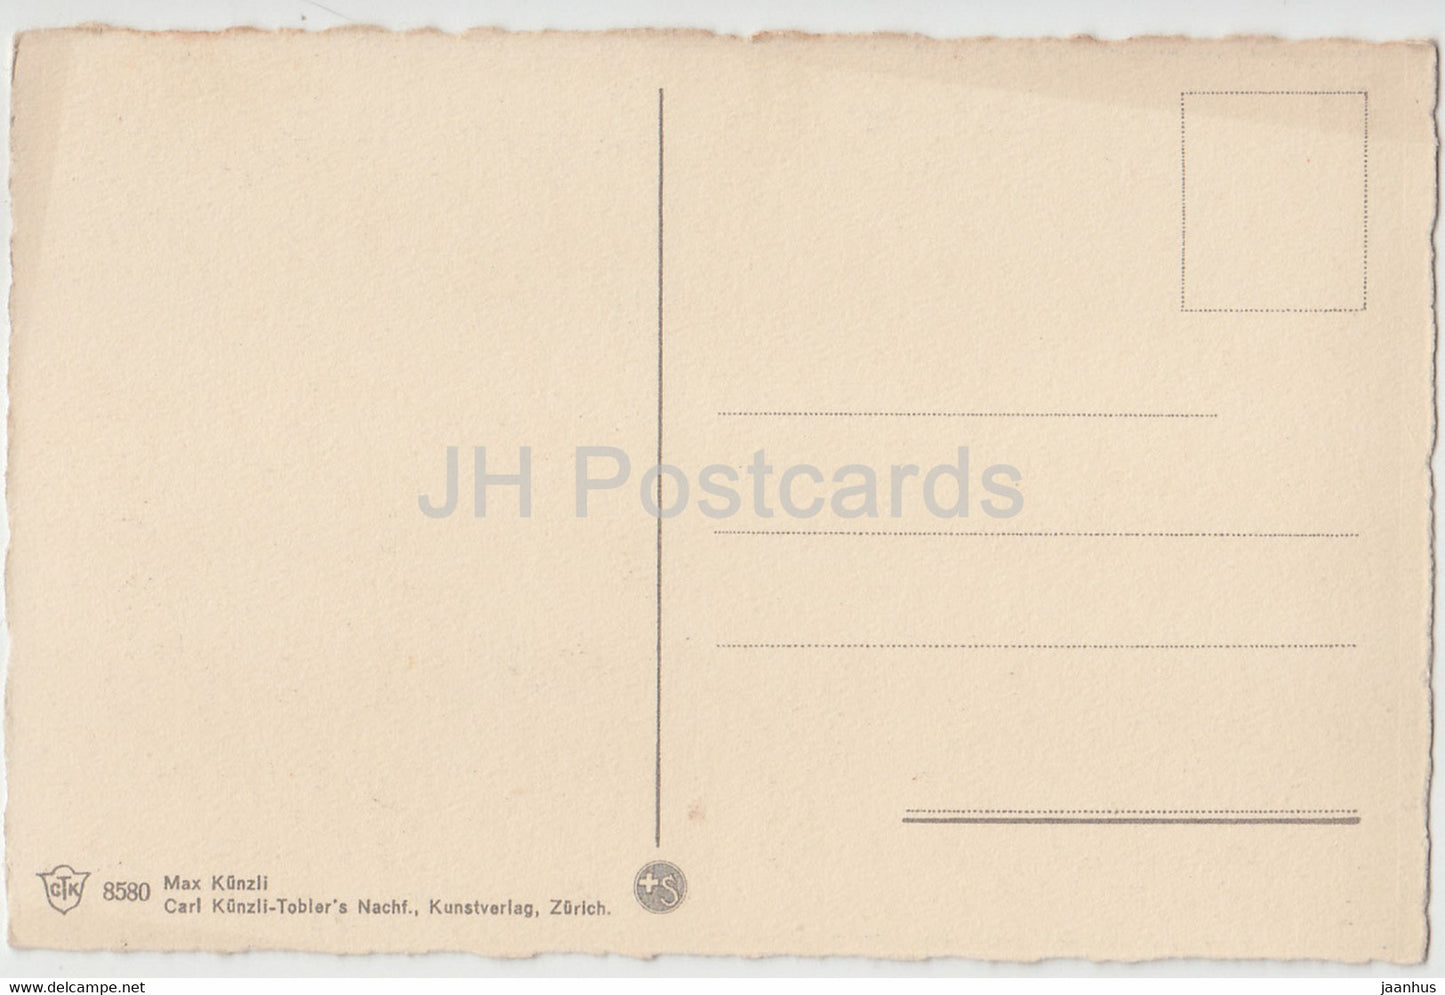 Locarno - 8580 - alte Postkarte - Schweiz - unbenutzt